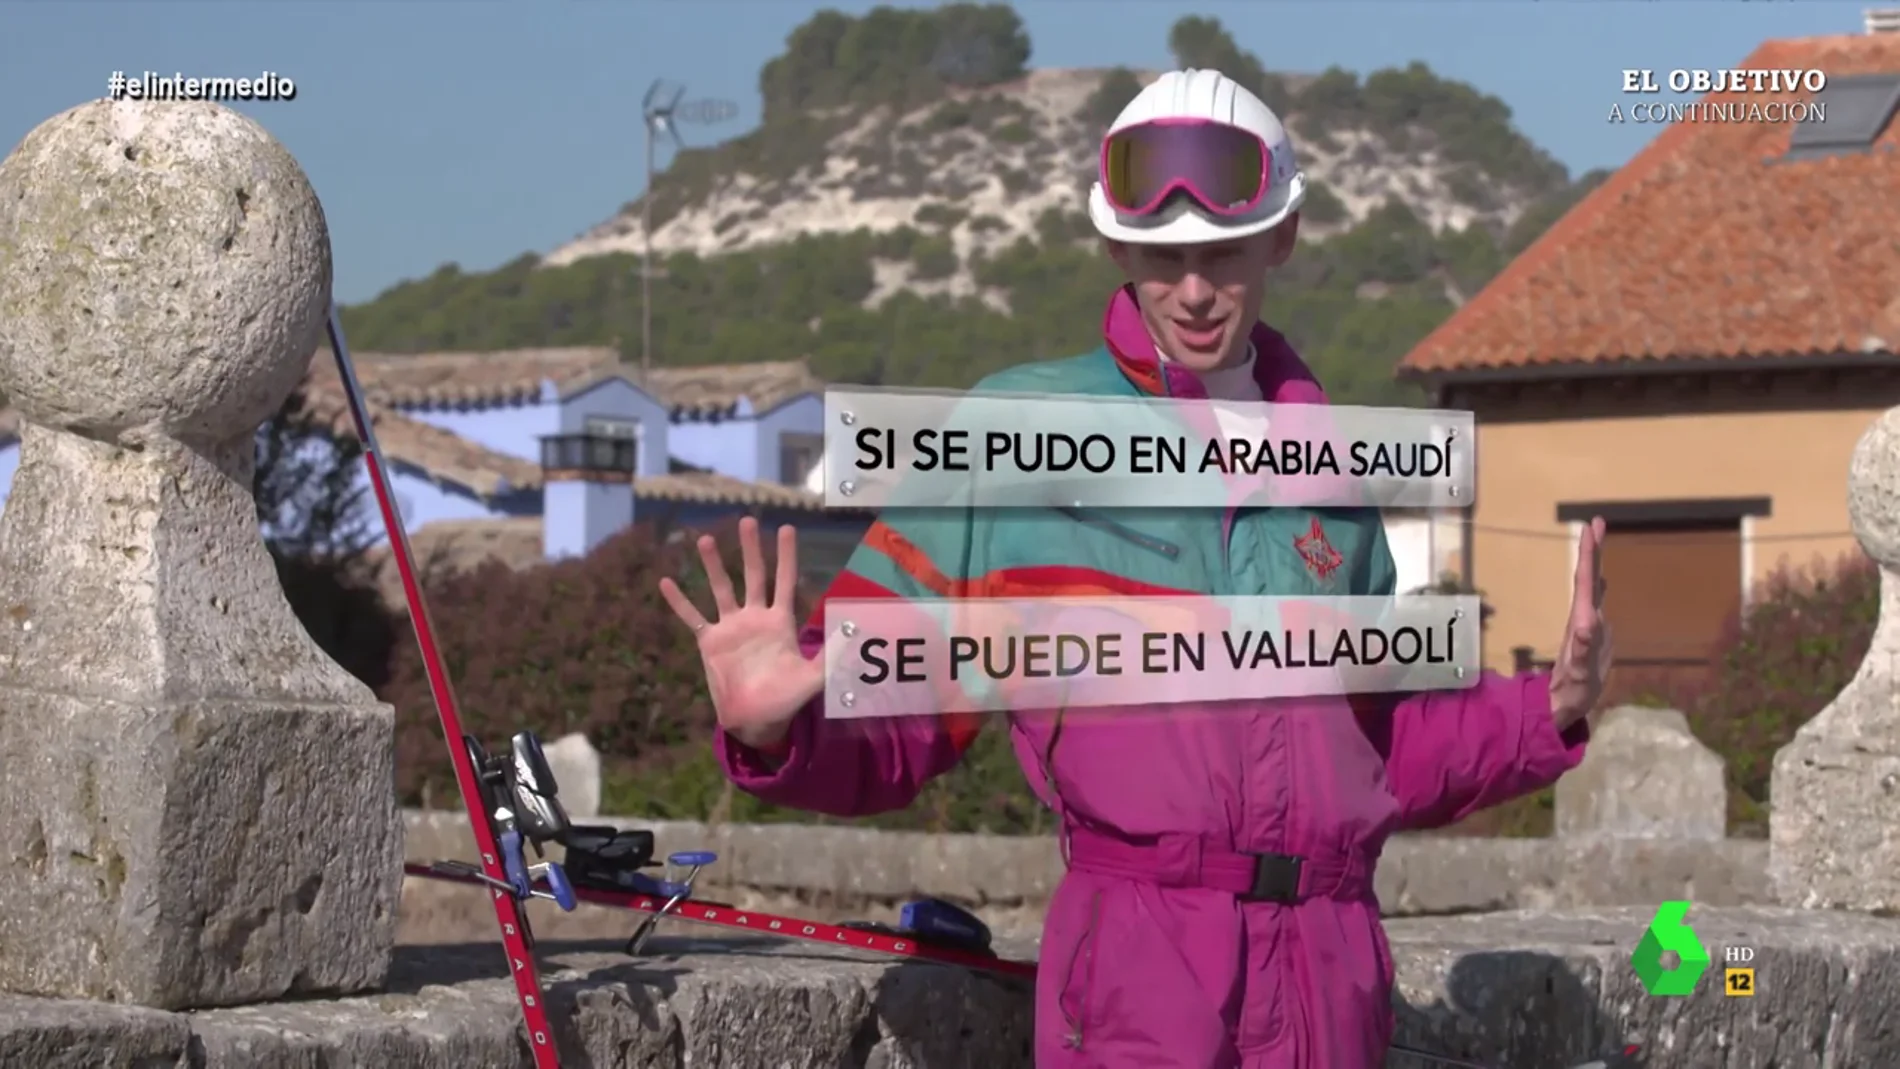 Erik Harley, indignado con el 'pufo' urbanístico de la pista de esquí seco en Valladolid: "¿Qué cojones nos pasa?, ¿qué va a ser lo próximo?"